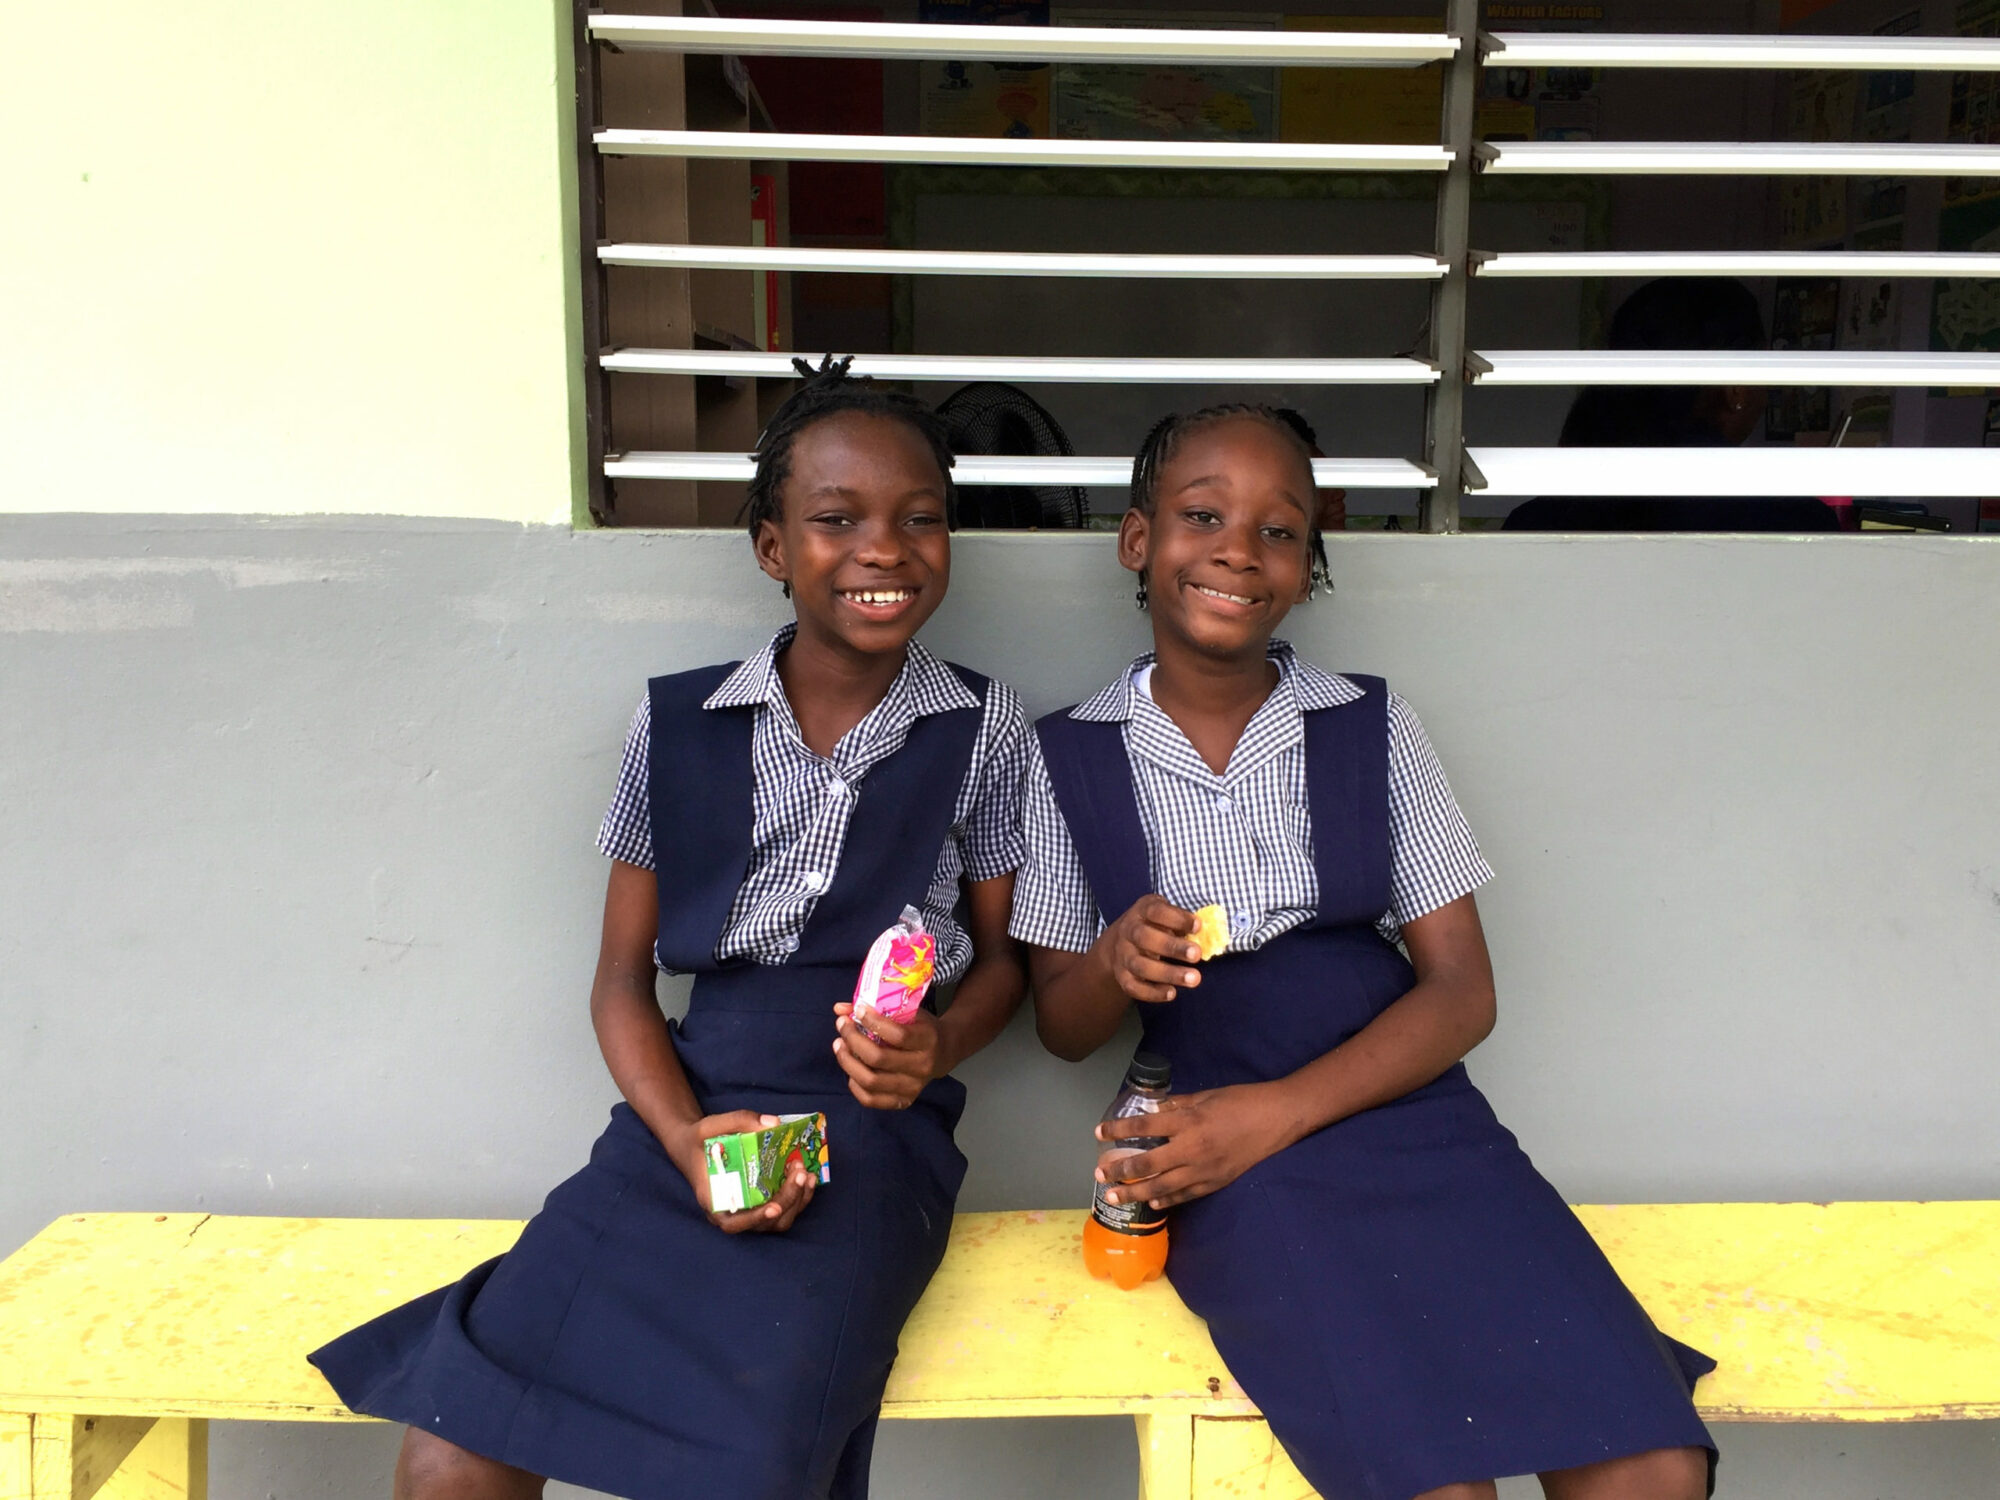 Two school girls in uniform